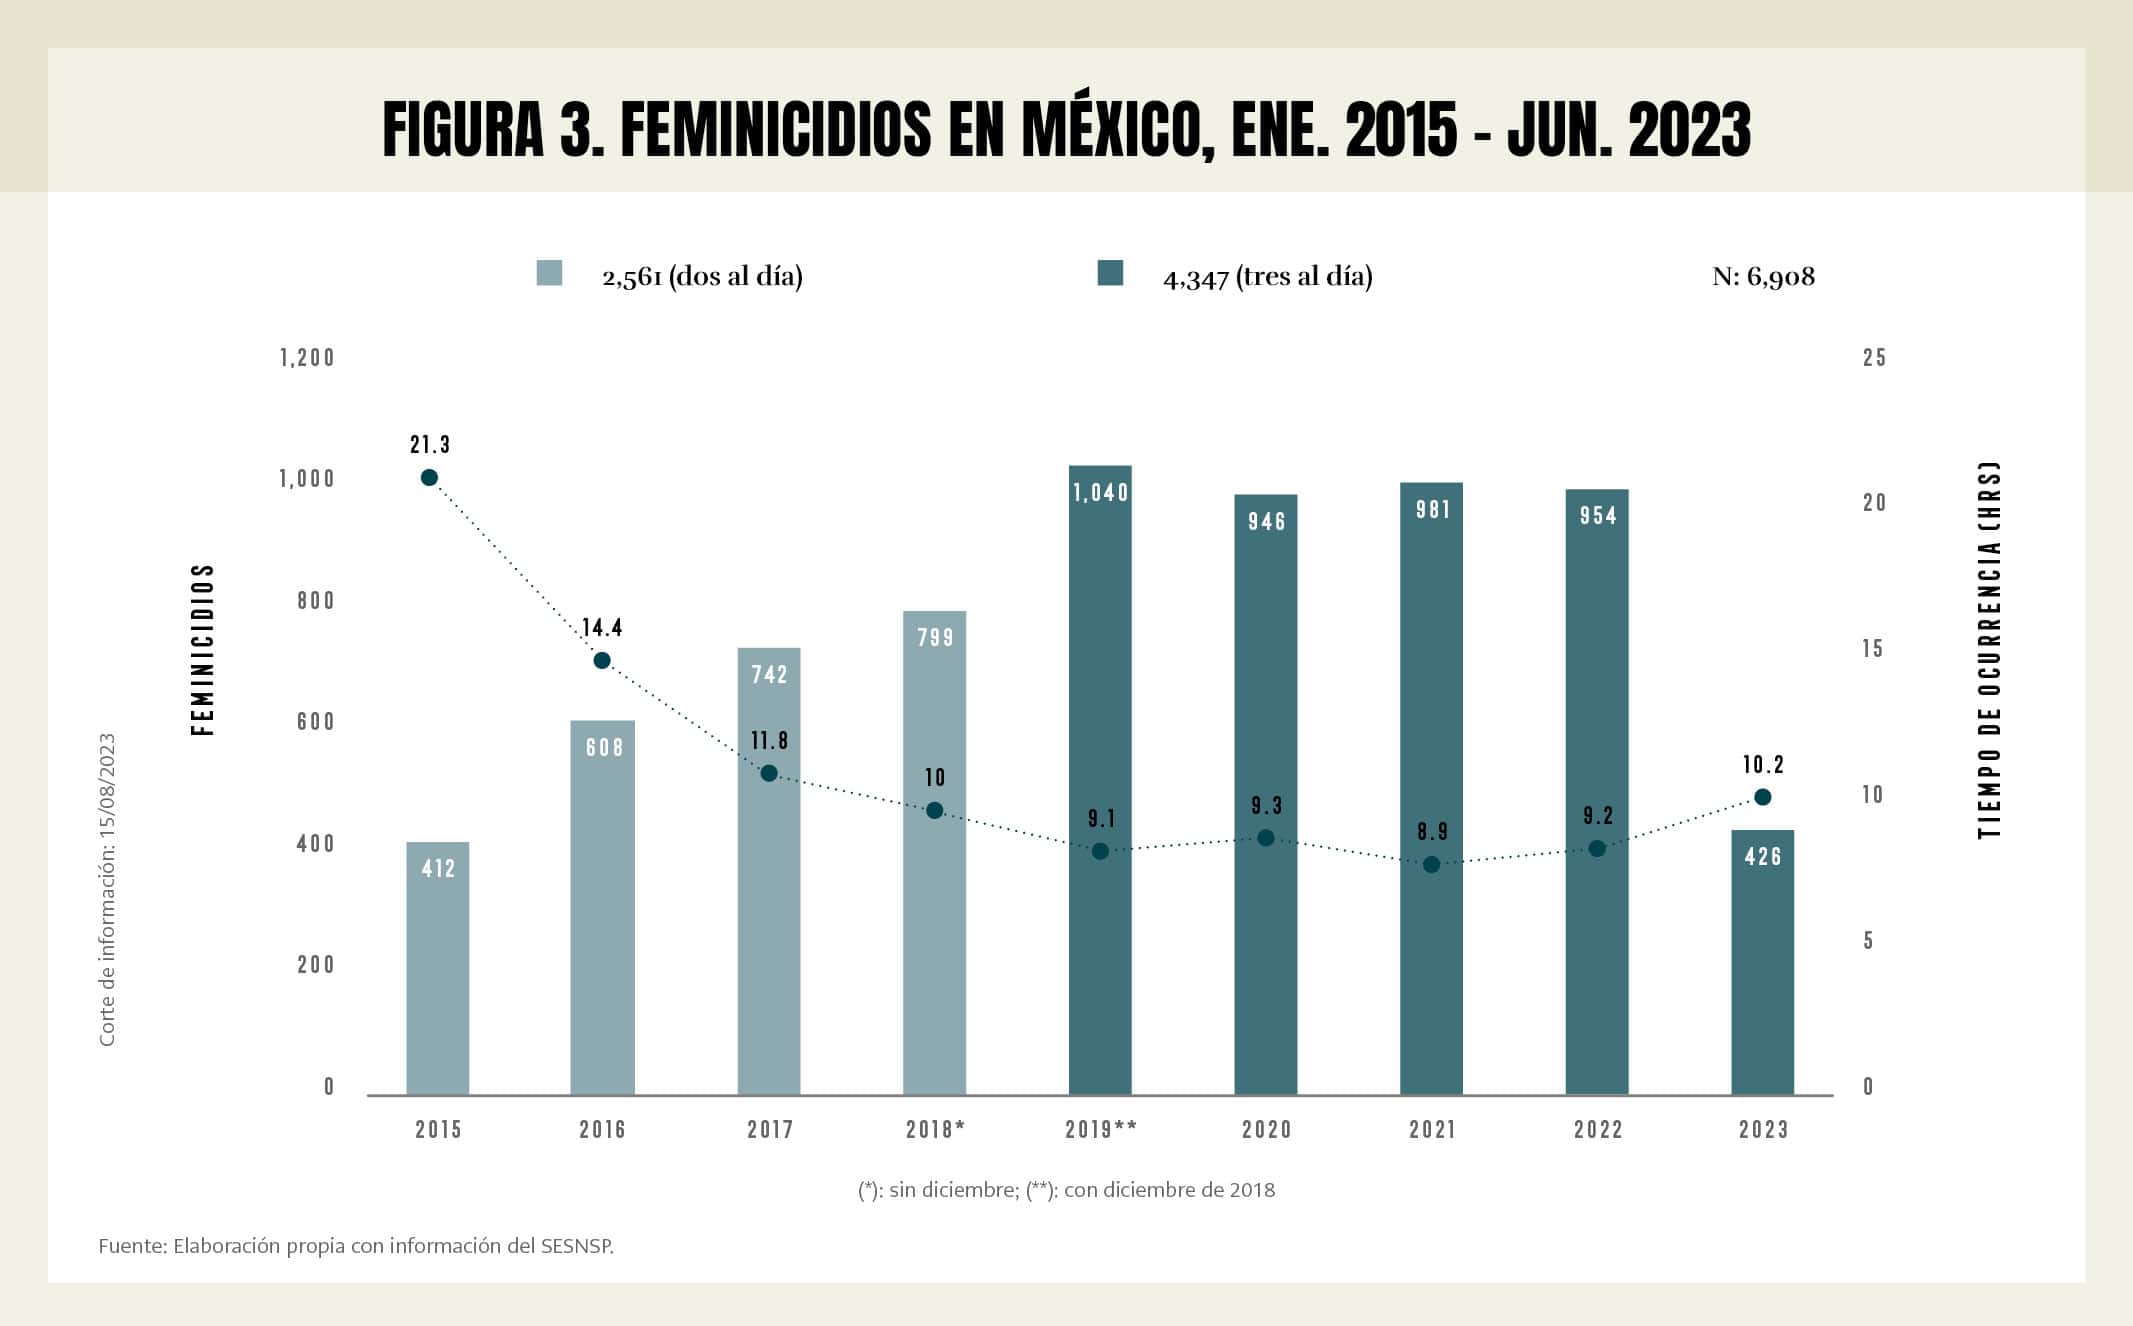 Fugura 3. Feminicidios en México, enero 2015 - junio 2023; con información del SESNSP